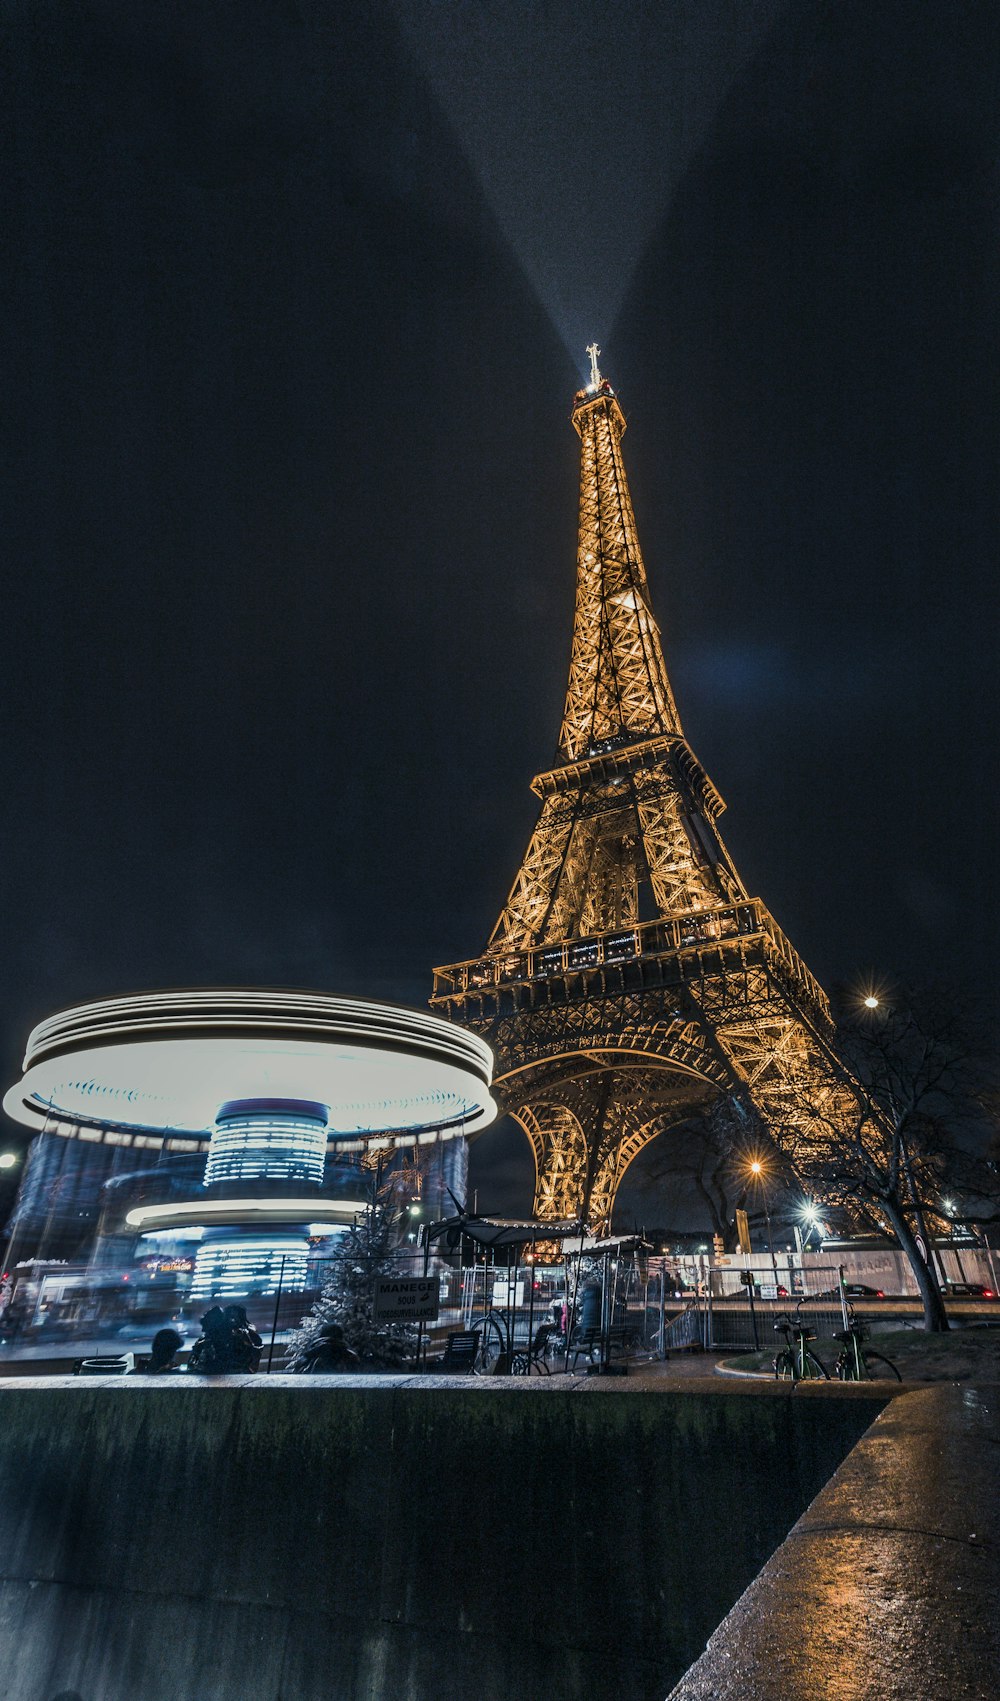 Eiffel Tower, Paris turned on lights